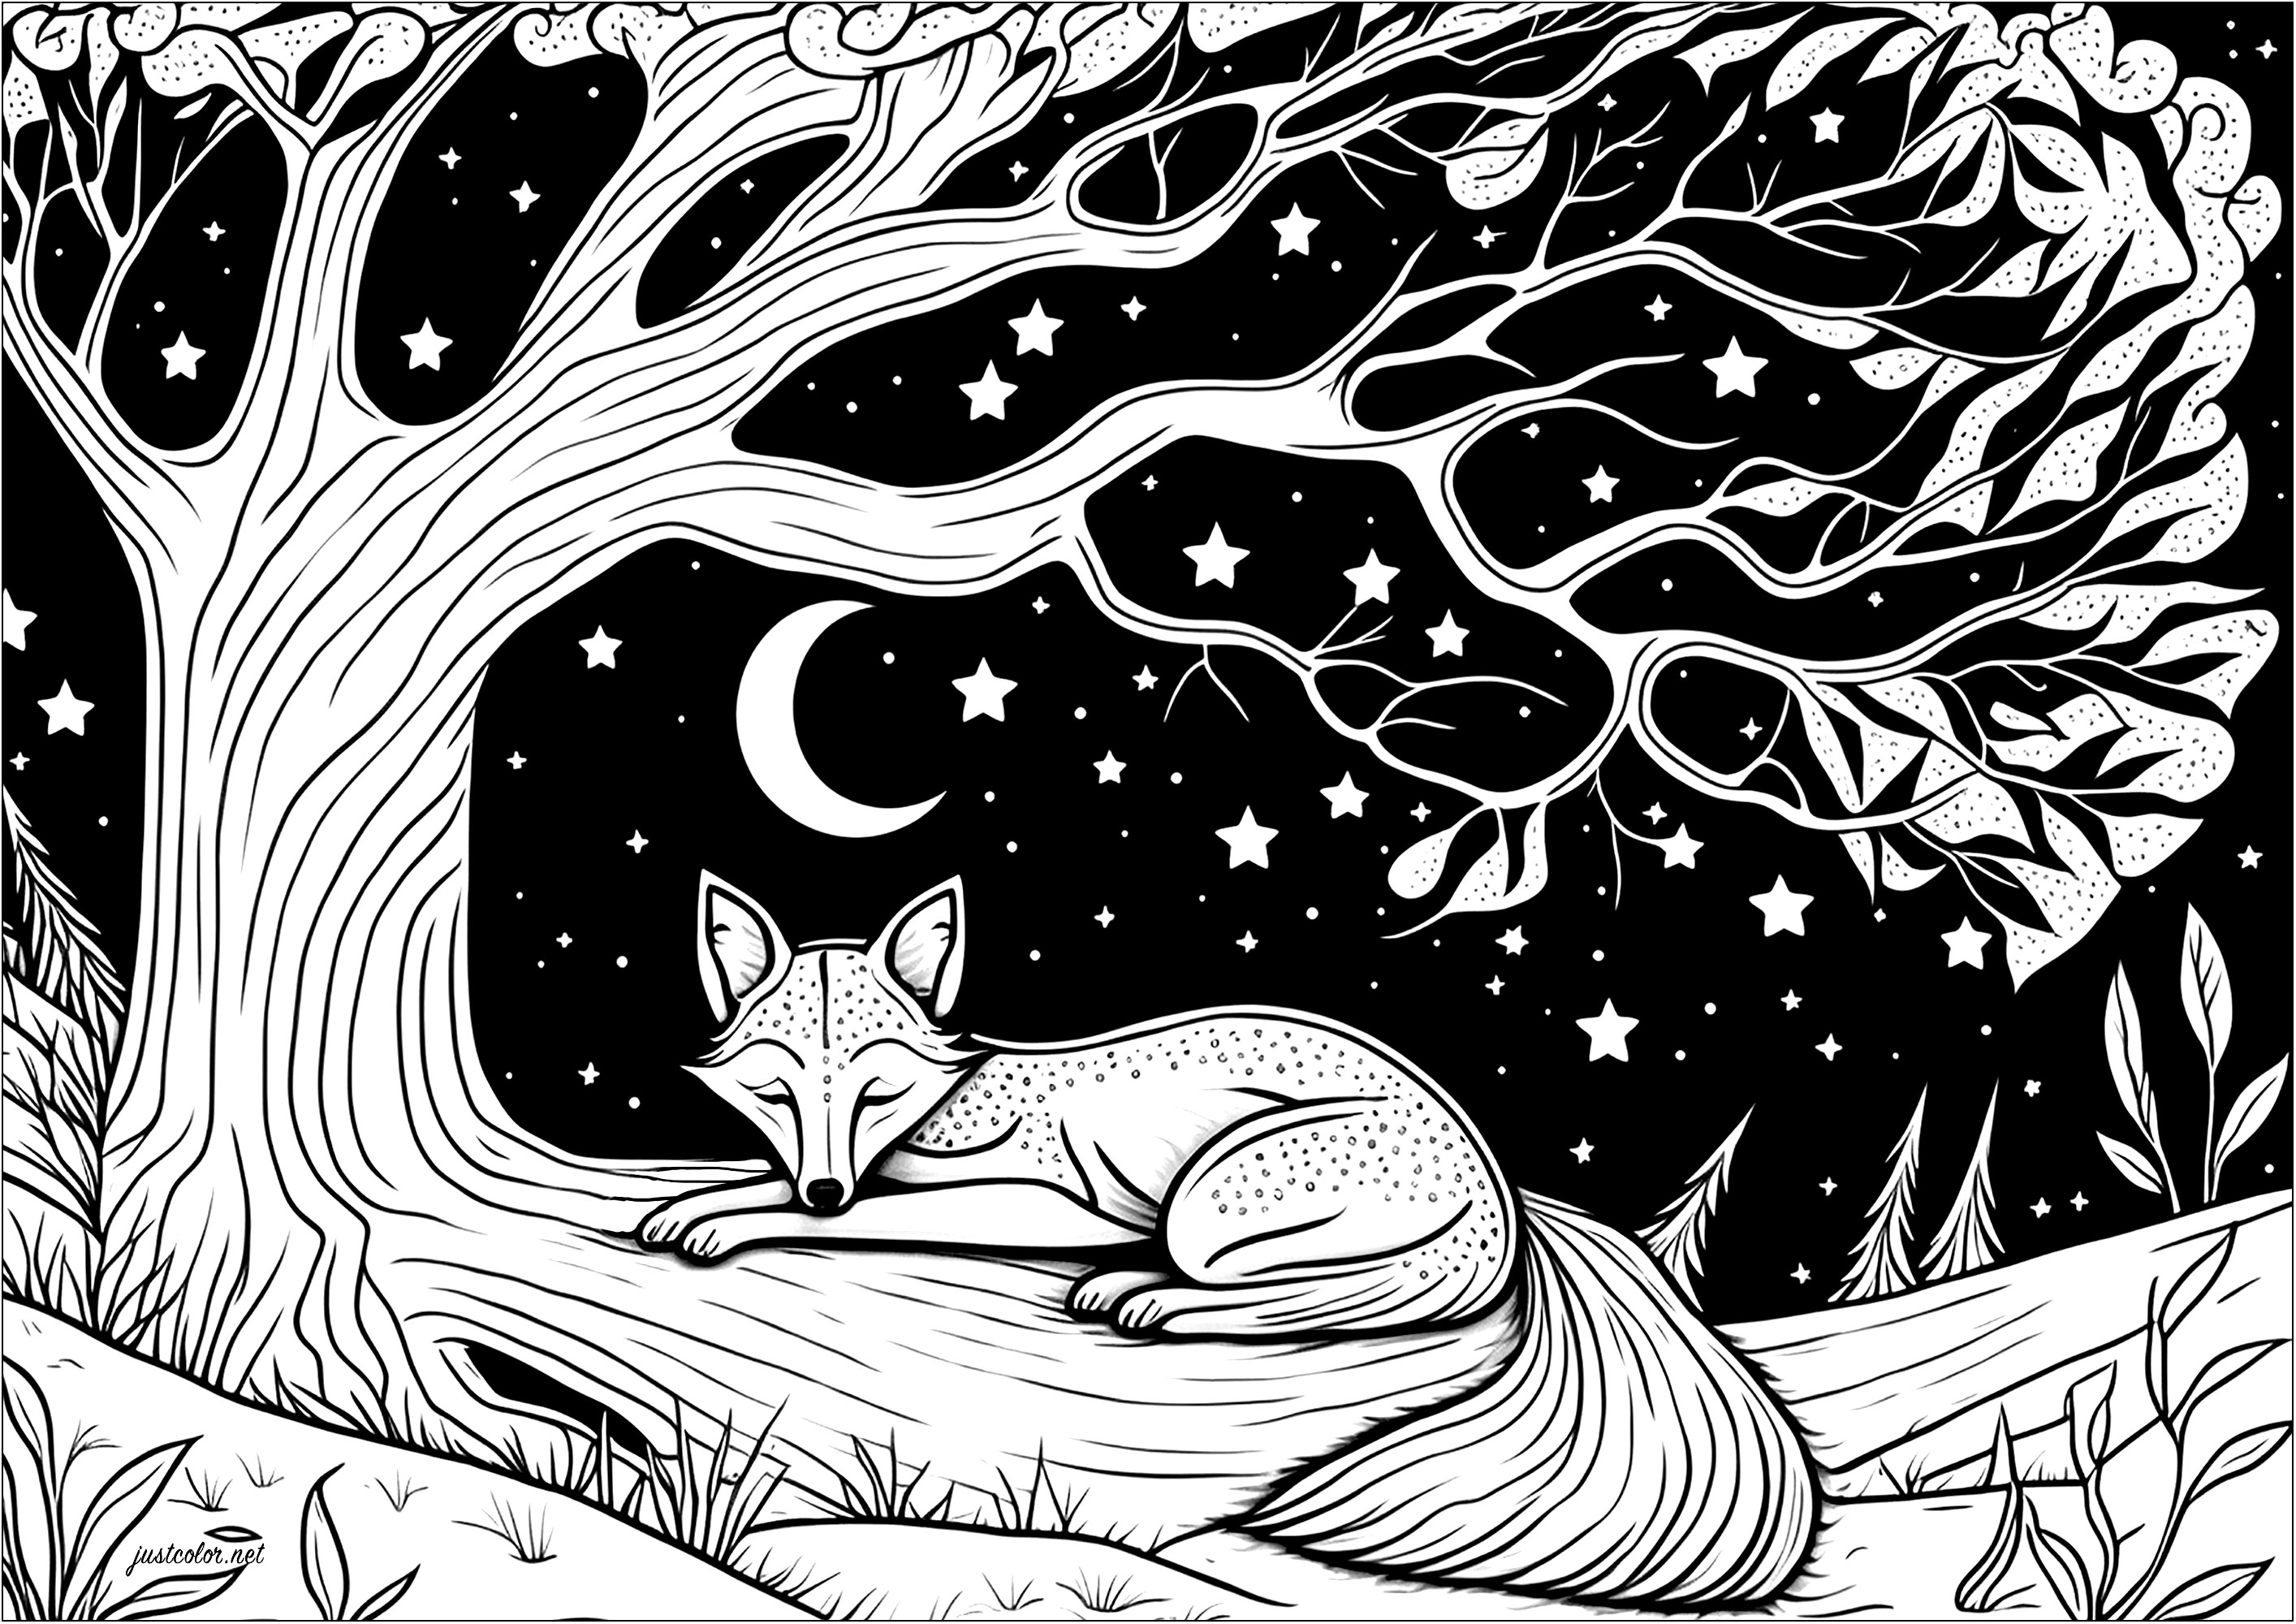 Coloreado de un zorro dormido tumbado en la rama de un árbol. Aquí tienes a un zorro durmiendo plácidamente bajo un hermoso árbol. Bajo este cielo estrellado, ¡parece que está soñando con grandes aventuras!